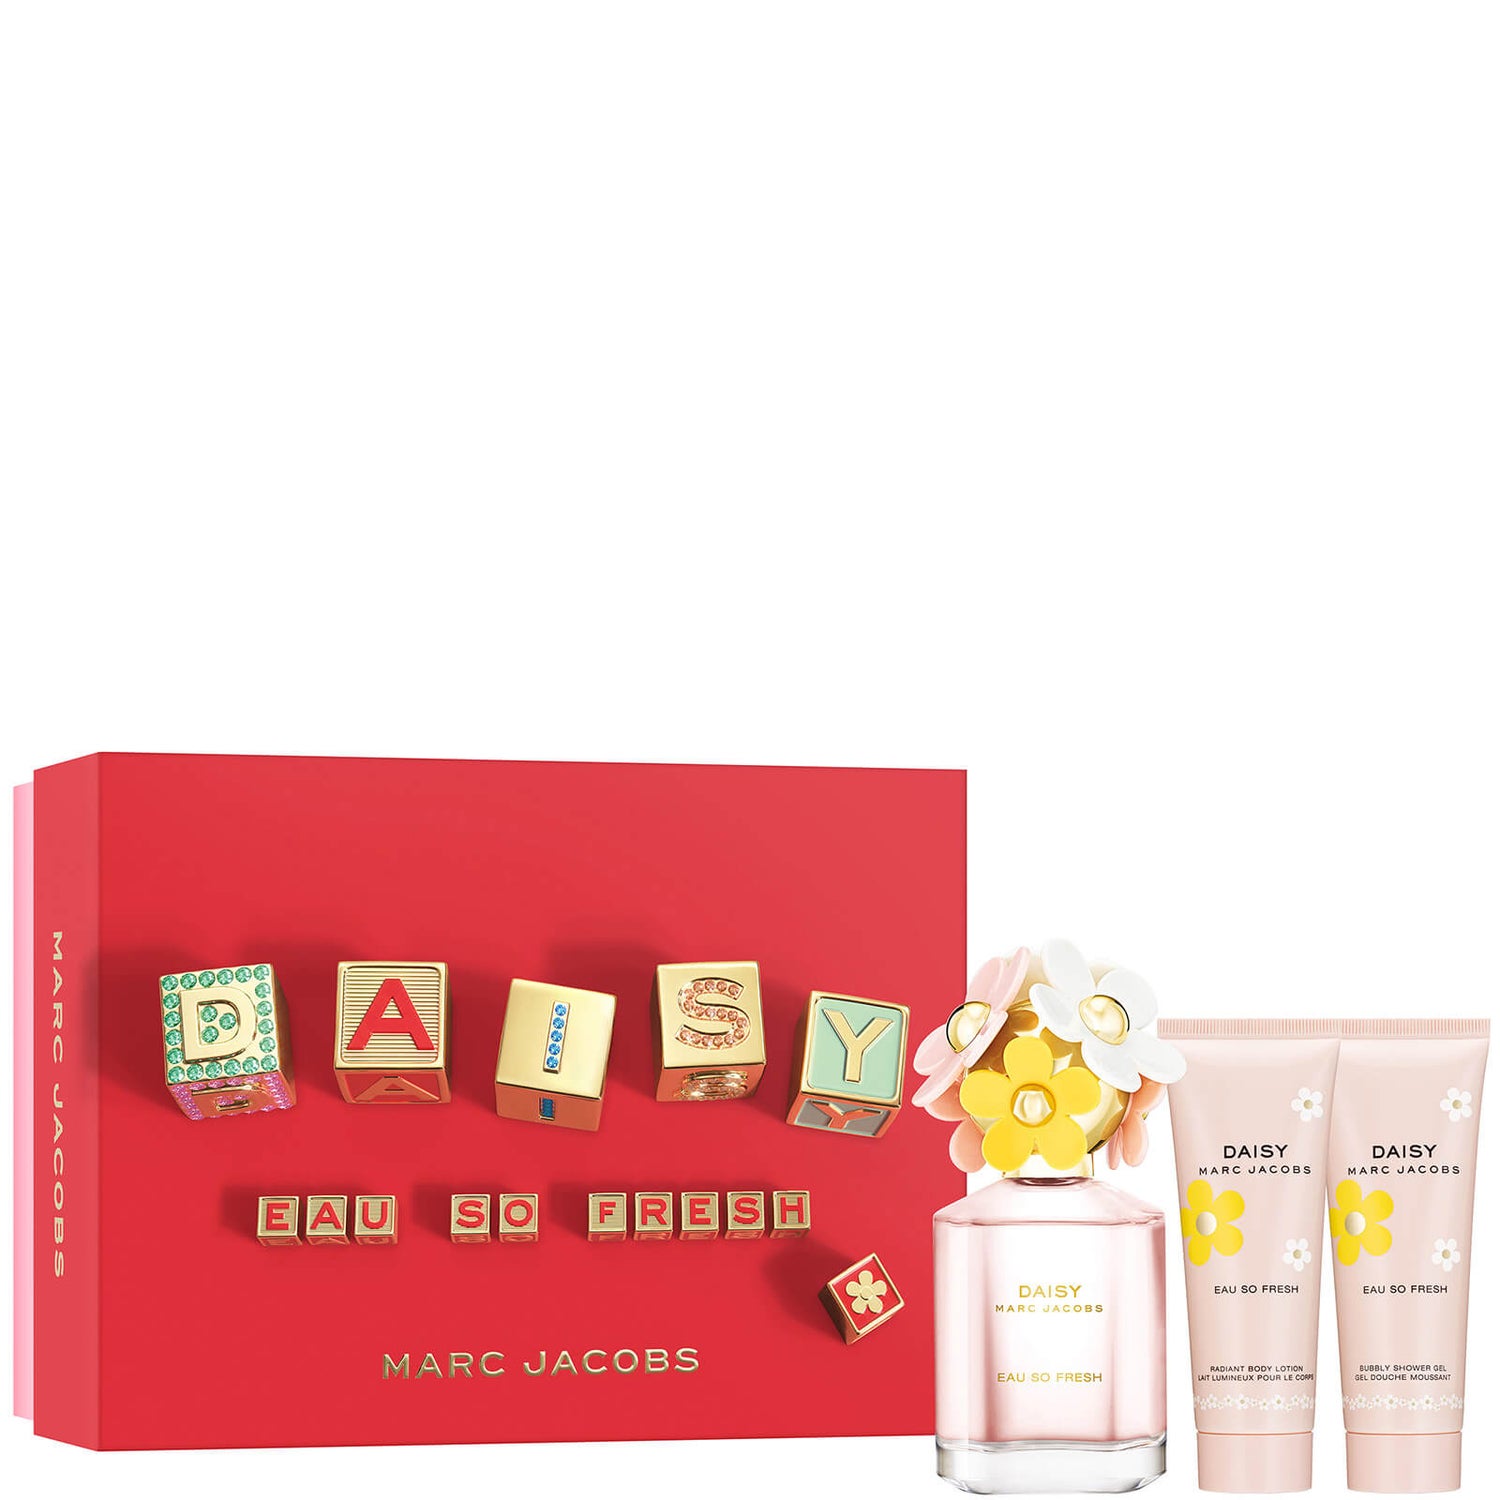 Marc Jacobs Eau So Fresh Eau de Toilette 75ml Gift Set